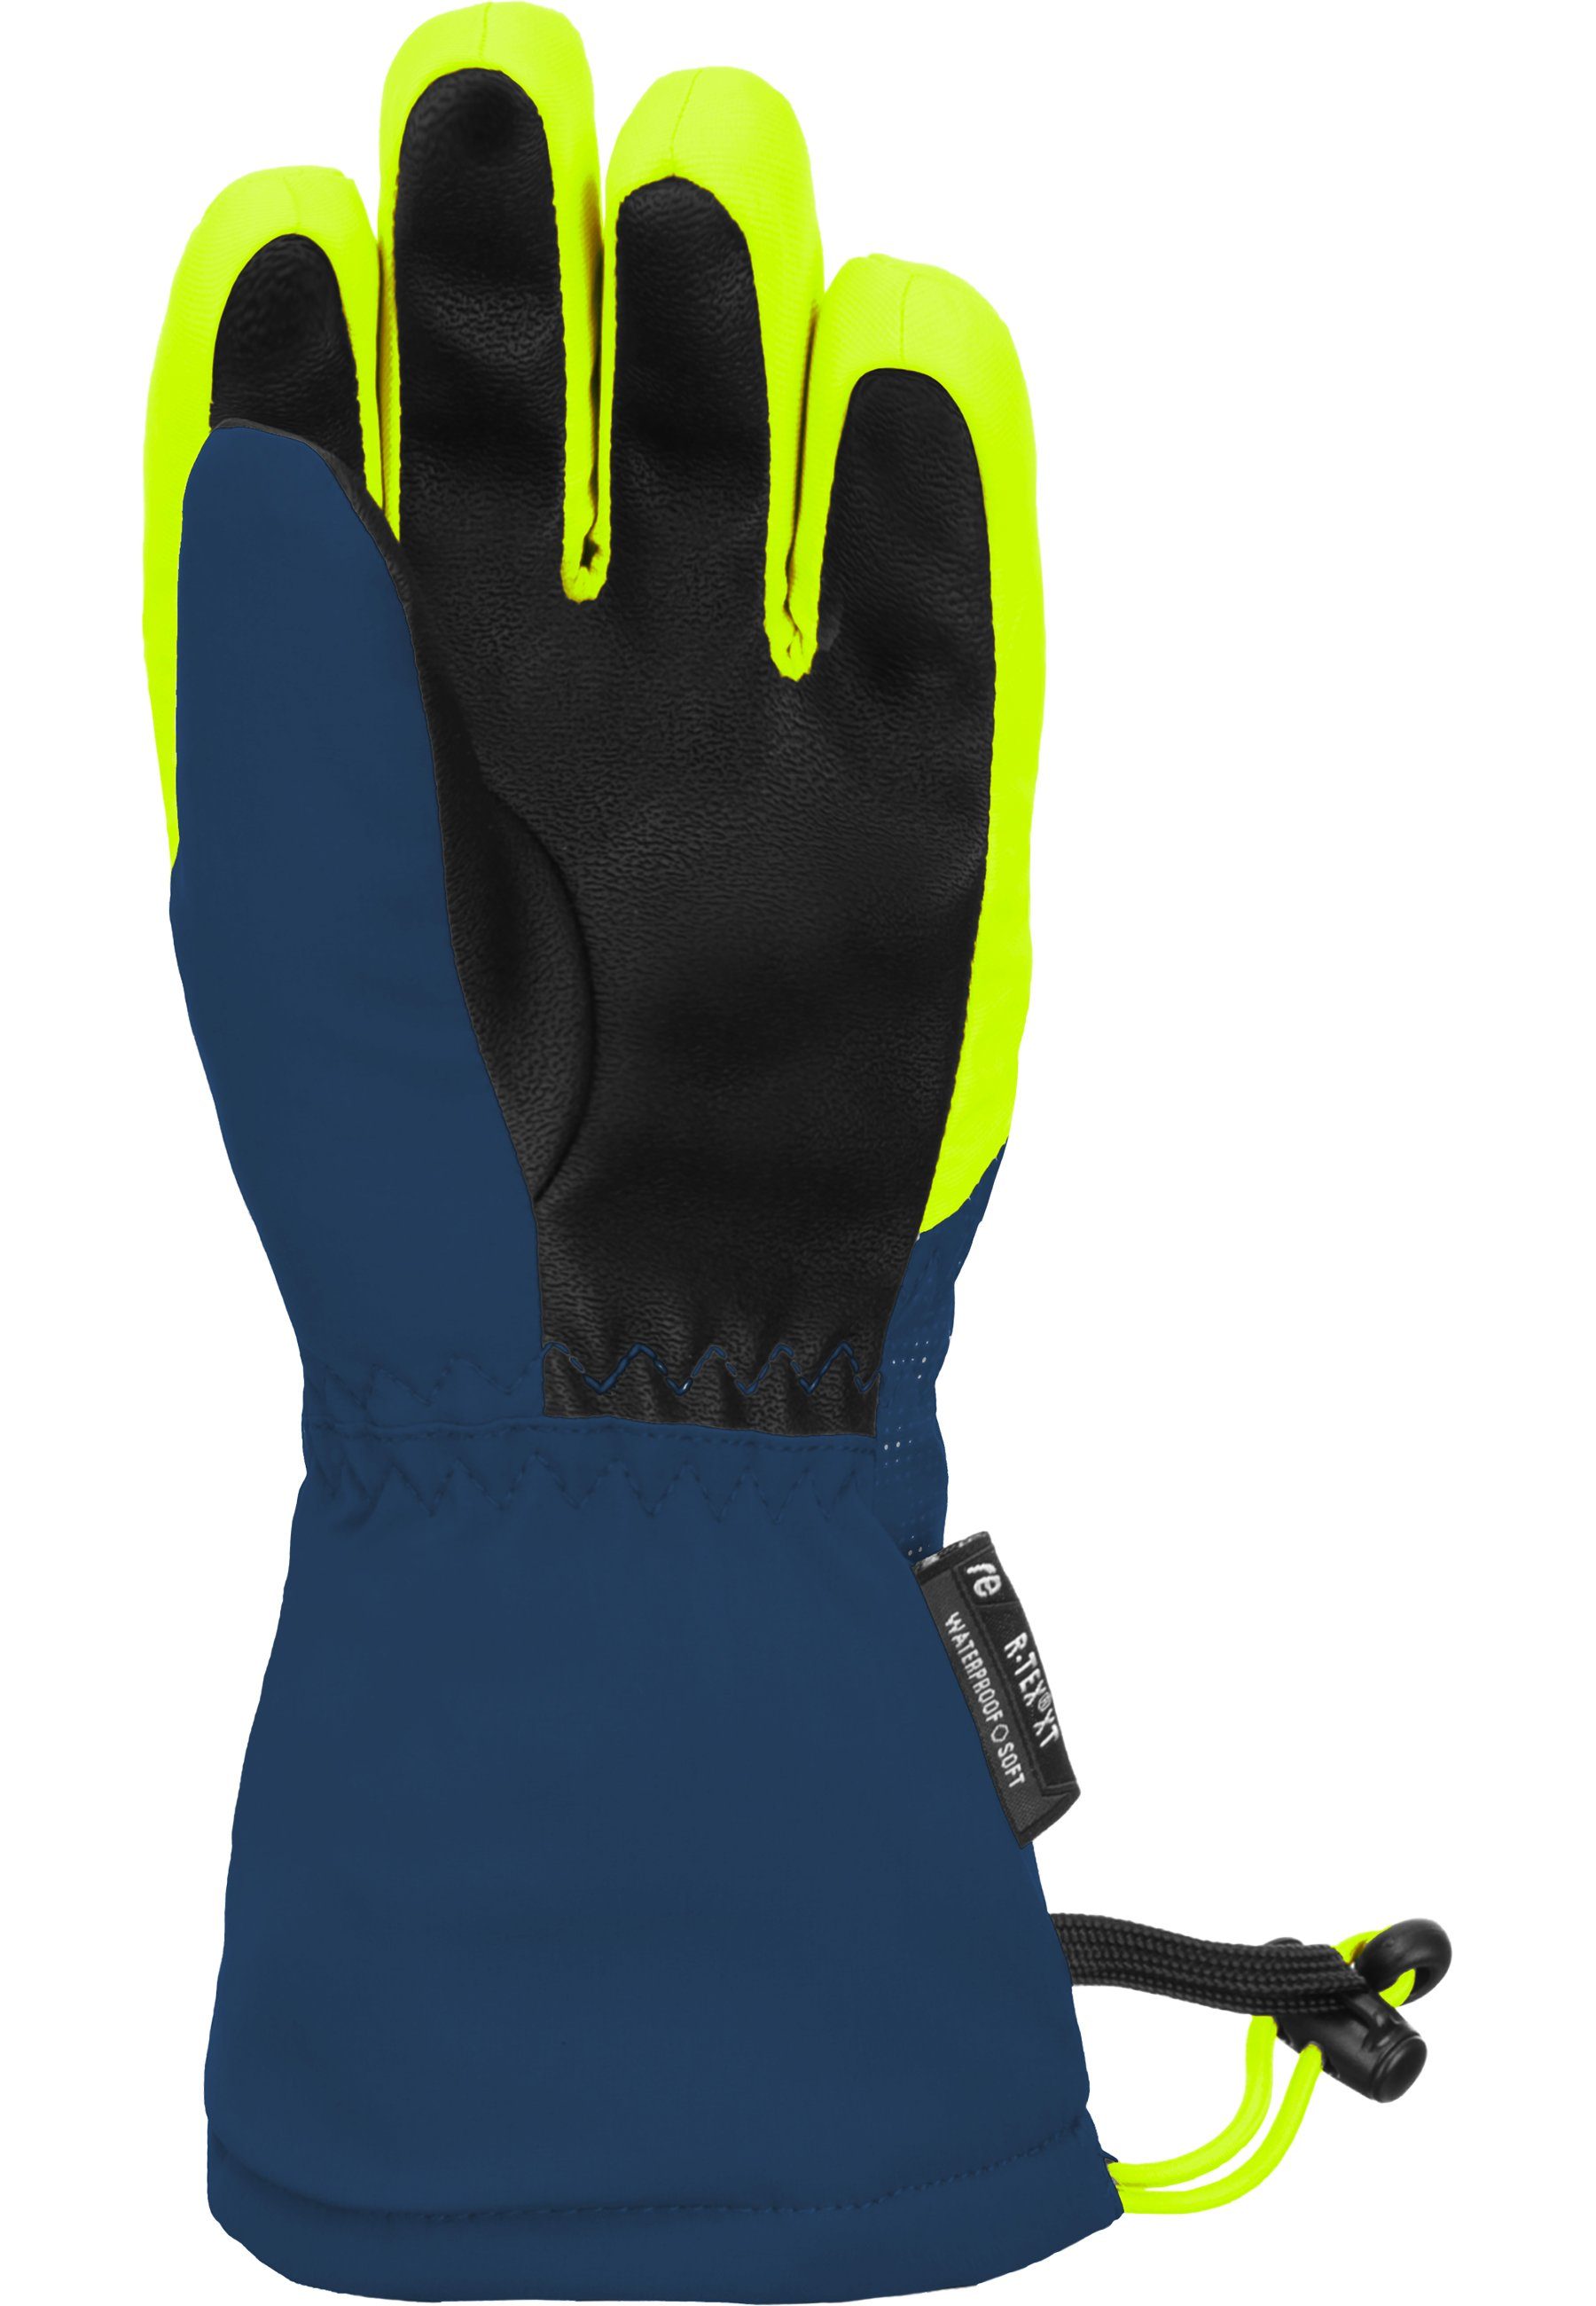 Reusch Skihandschuhe warmer blau-gelb R-TEX mit XT Fütterung Maxi